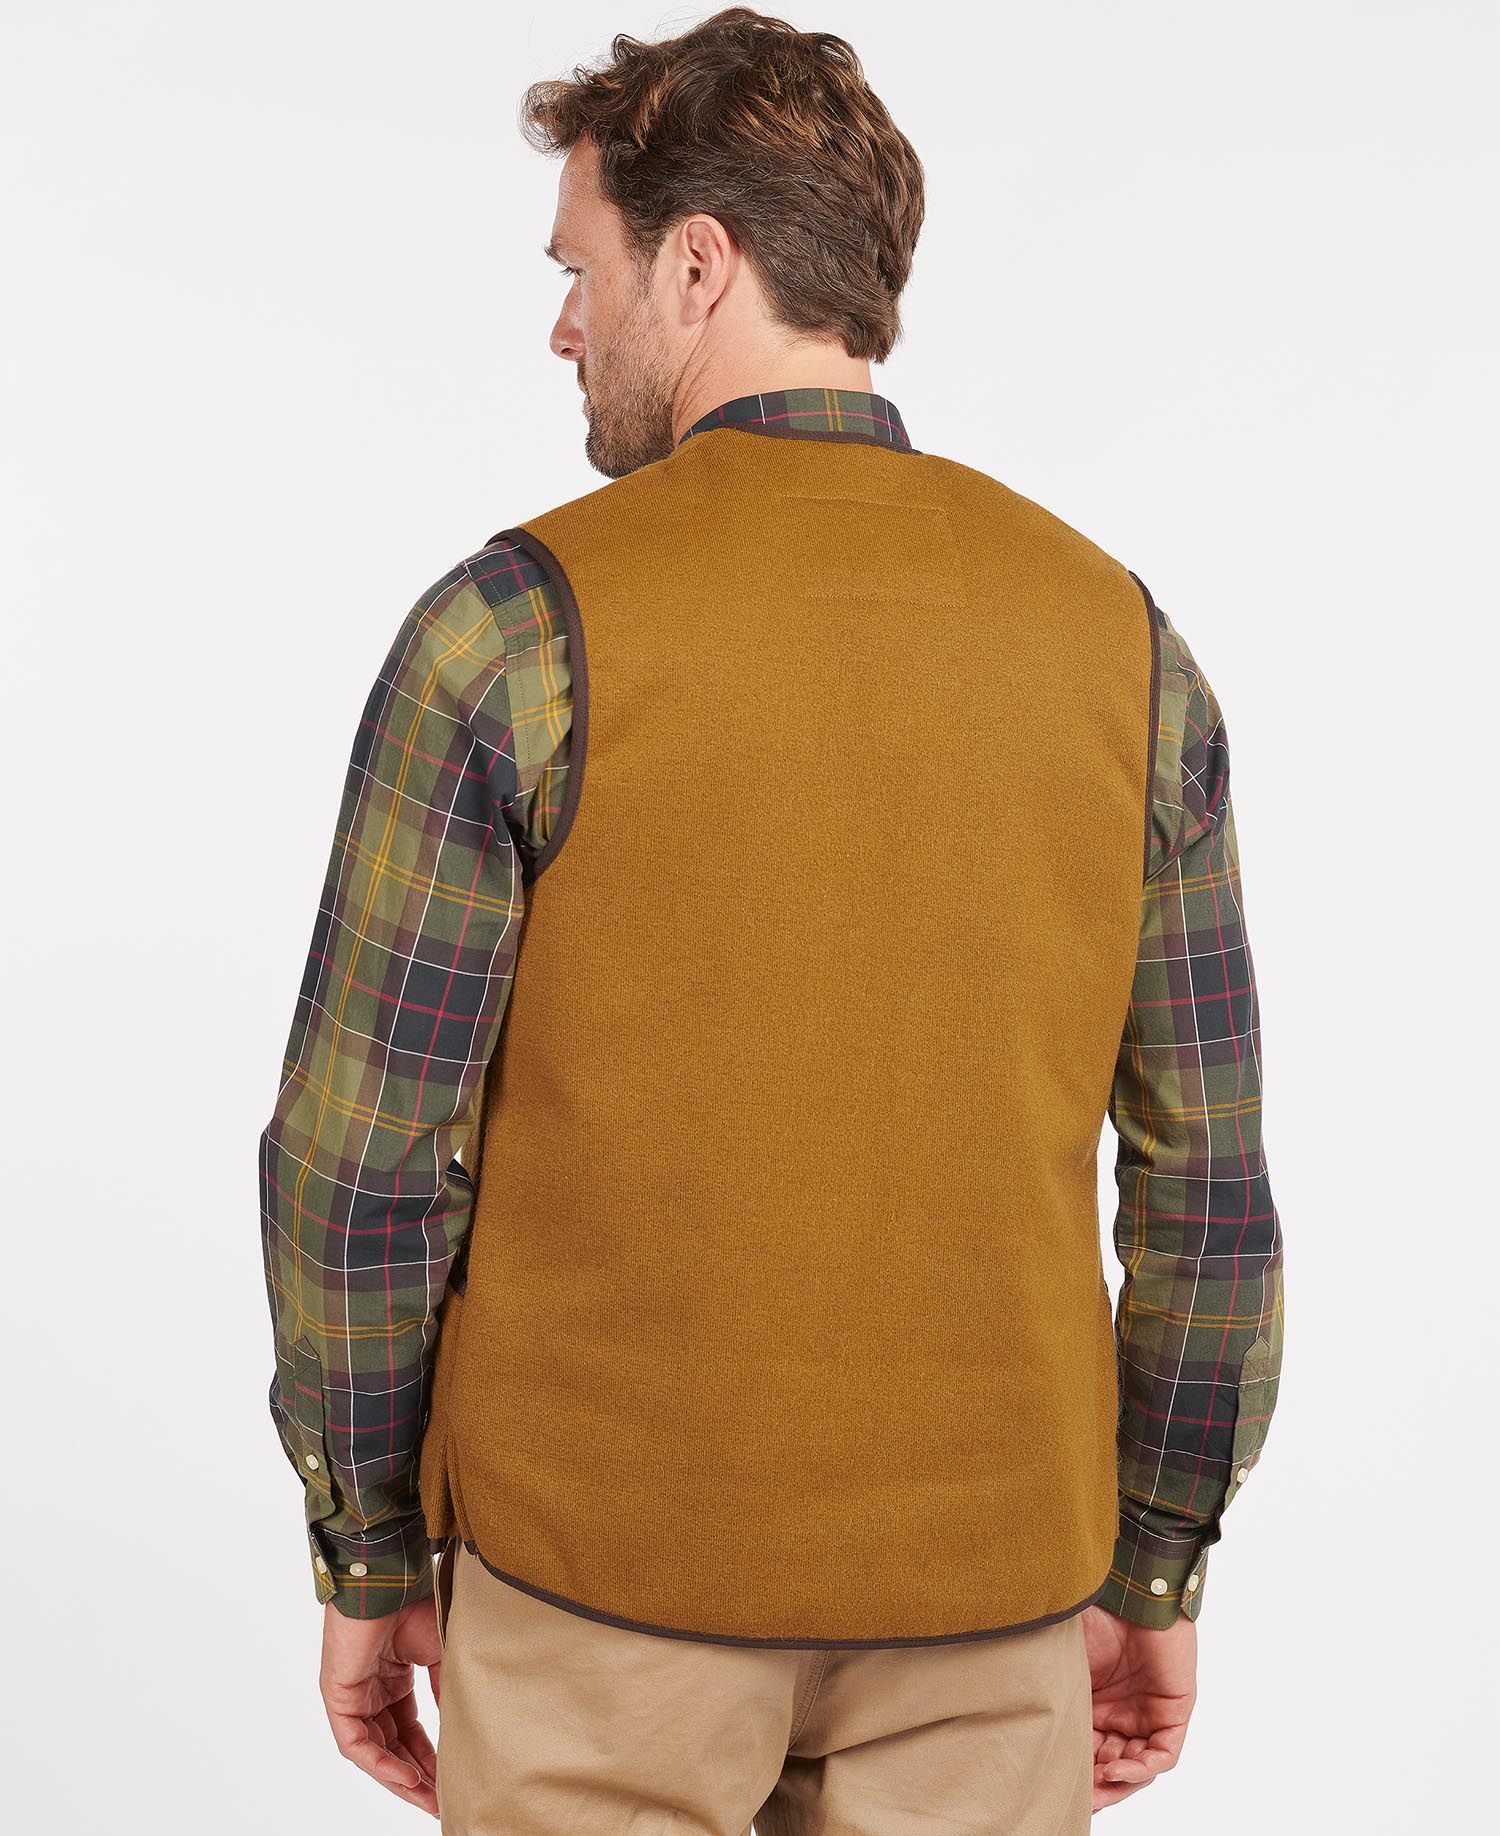 Barbour Warm Pile Waistcoat Zip-In Liner in Brown | Barbour